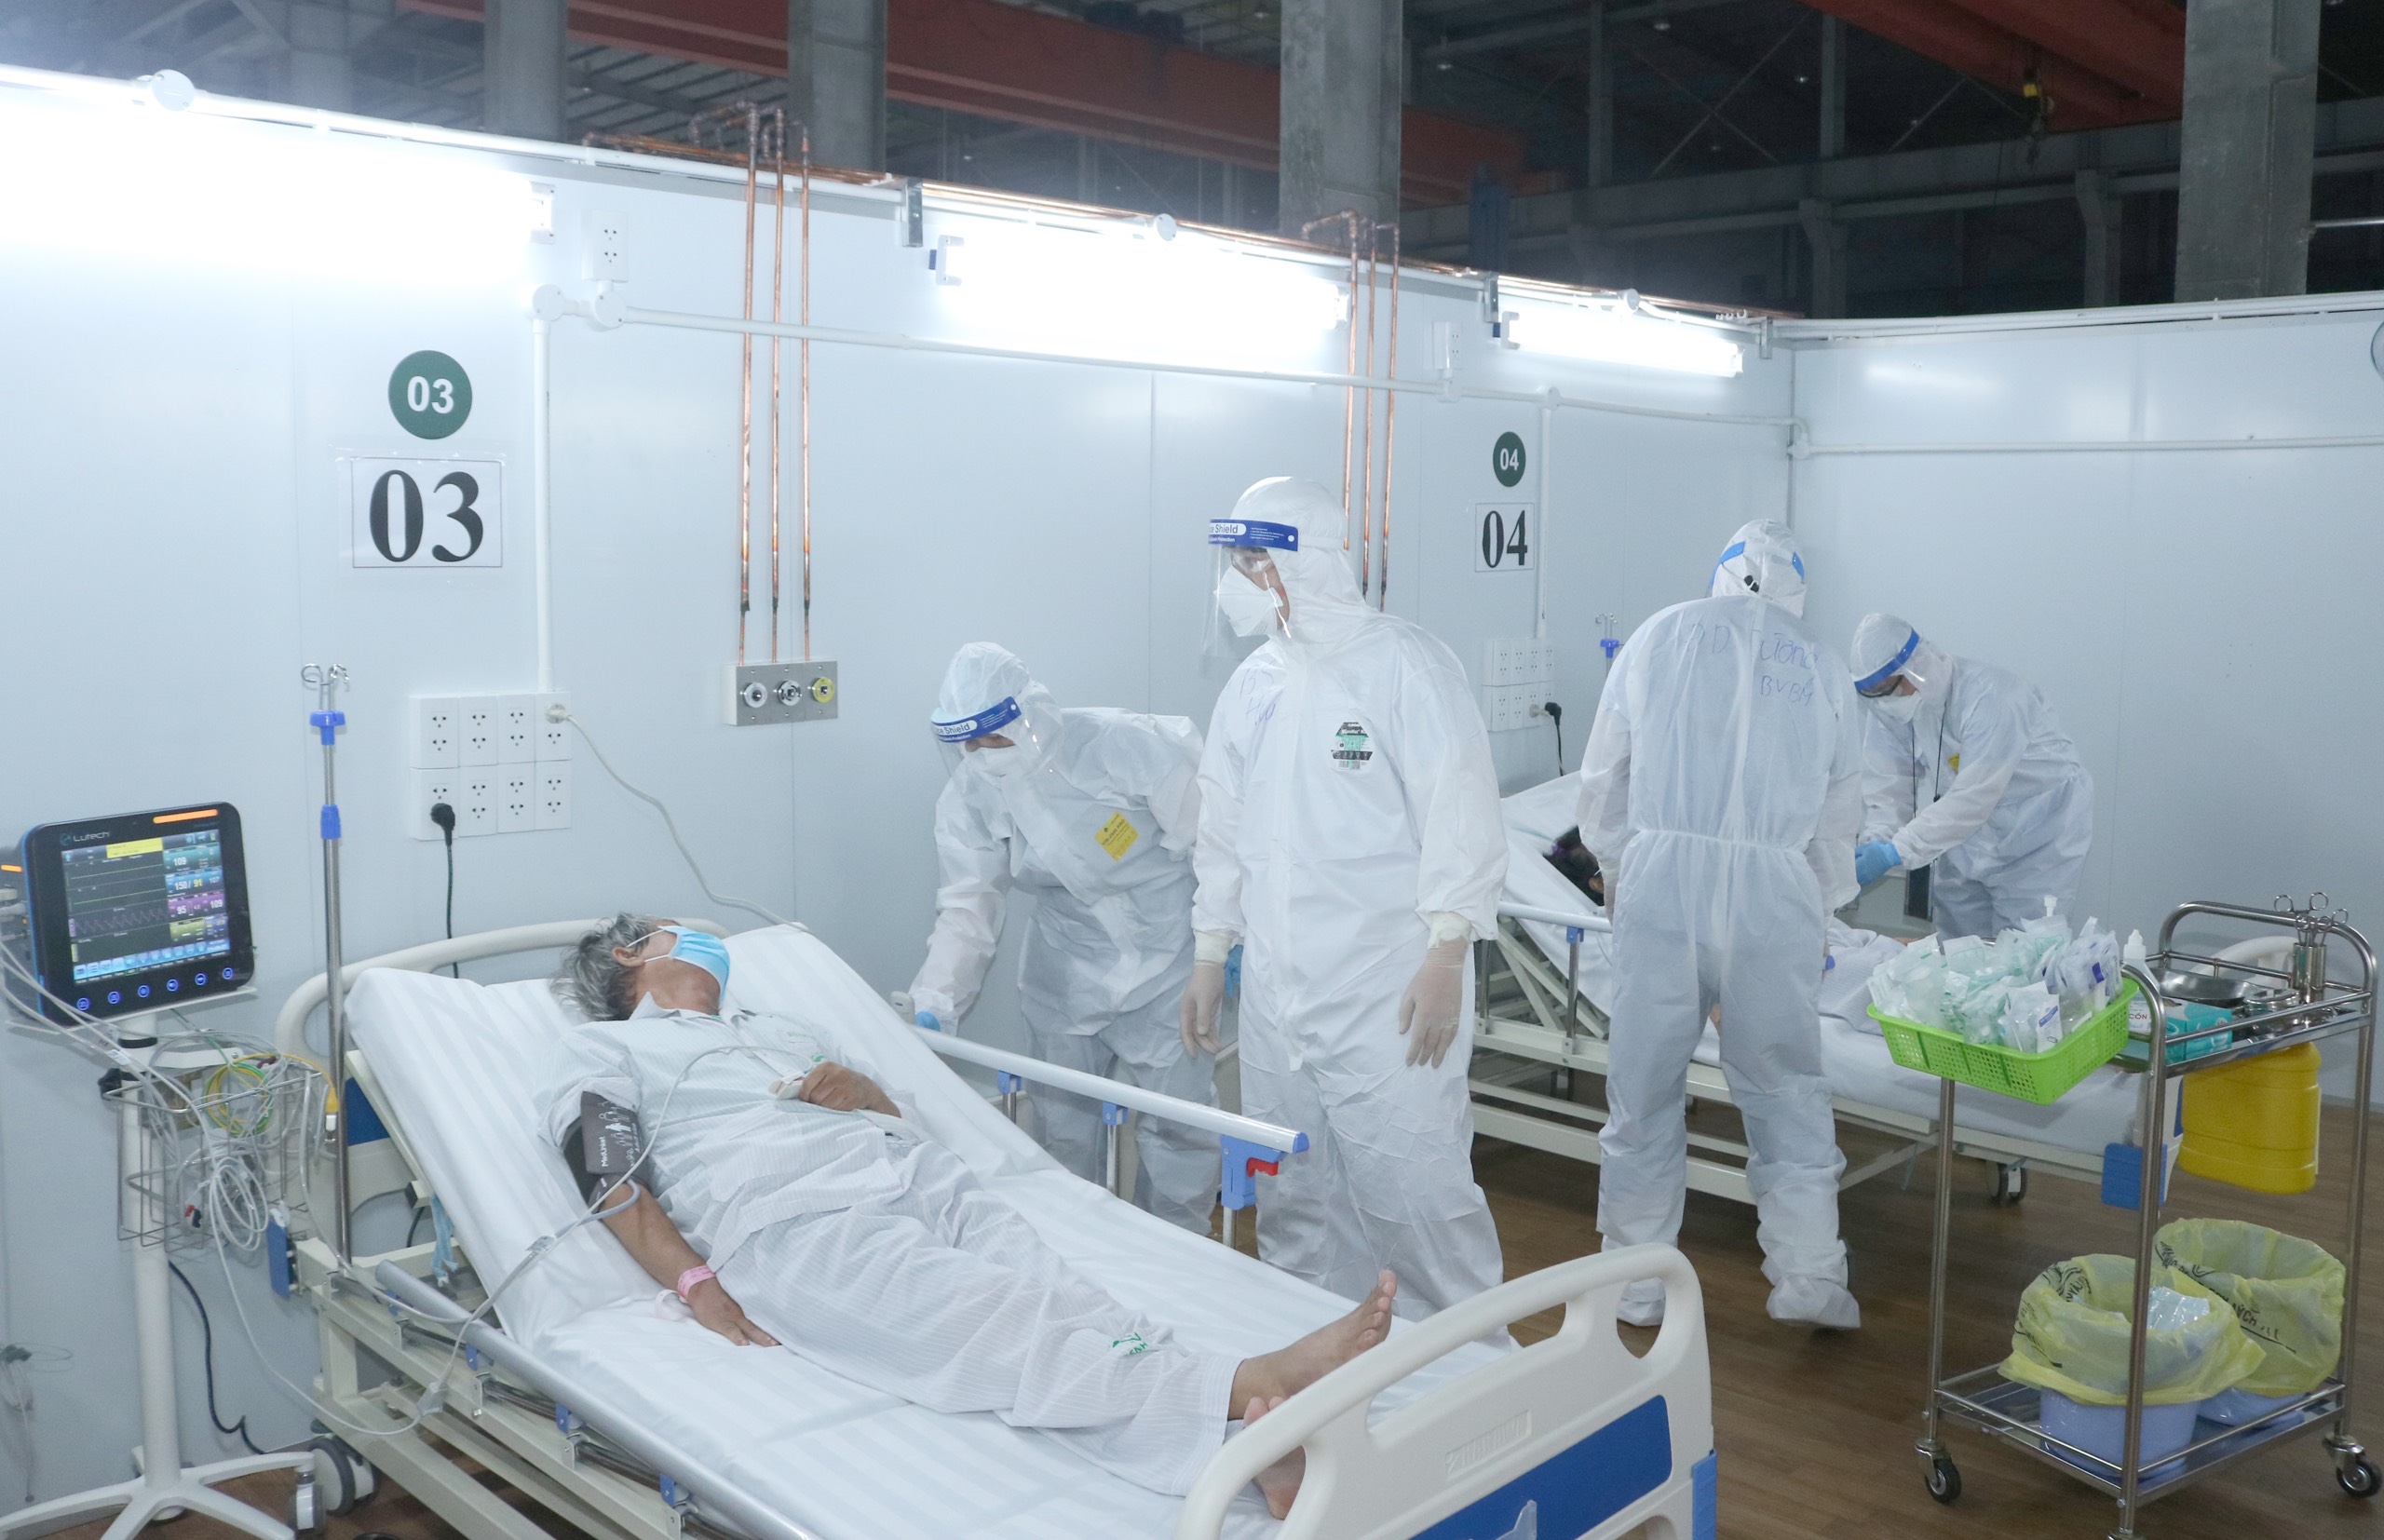 Các chuyên gia của Bệnh viện Bạch Mai tại Trung tâm hồi sức tích cực COVID-19, Bệnh viện dã chiến 16, TP. Hồ Chí Minh đang chăm sóc, điều trị bệnh nhân COVID-19 nặng (Ảnh: BV Bạch Mai)